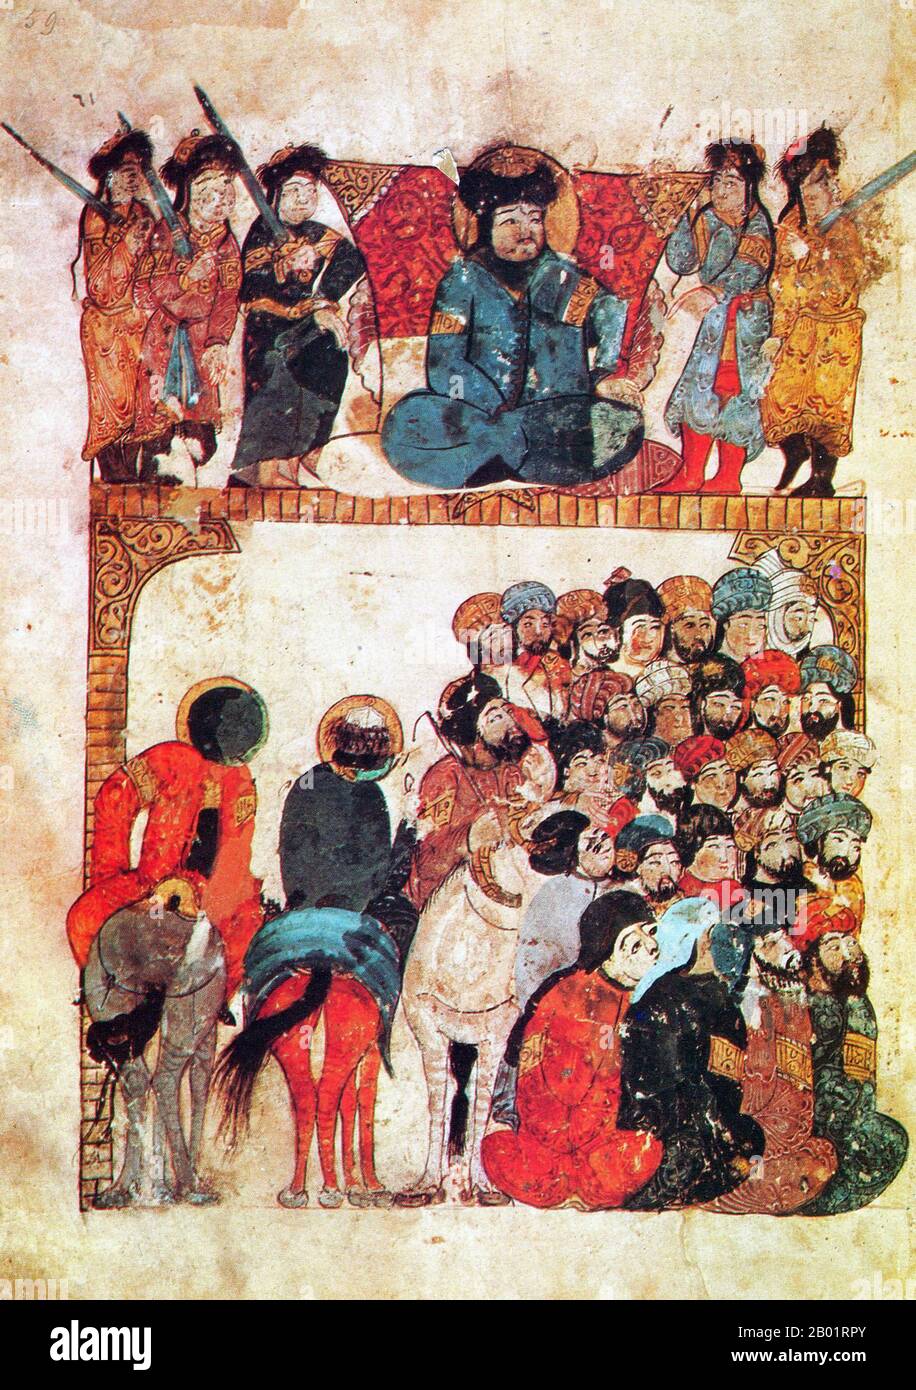 Iraq: Un sovrano, le sue guardie del corpo e la gente comune. Pittura in miniatura di Yahya ibn Mahmud al-Wasiti, 1237 d.C. Yahyâ ibn Mahmûd al-Wâsitî è stato un artista arabo islamico del XIII secolo. Al-Wasiti è nato a Wasit, nel sud dell'Iraq. Era noto per le sue illustrazioni del Maqam di al-Hariri. I Maqāma (letteralmente "assemblee") sono un genere letterario arabo (originariamente) di prosa rimata con intervalli di poesia in cui la stravaganza retorica è evidente. Si dice che l'autore del X secolo Badī' al-Zaman al-Hamadhāni abbia inventato la forma, che fu estesa da al-Hariri di Bassora nel secolo successivo. Foto Stock